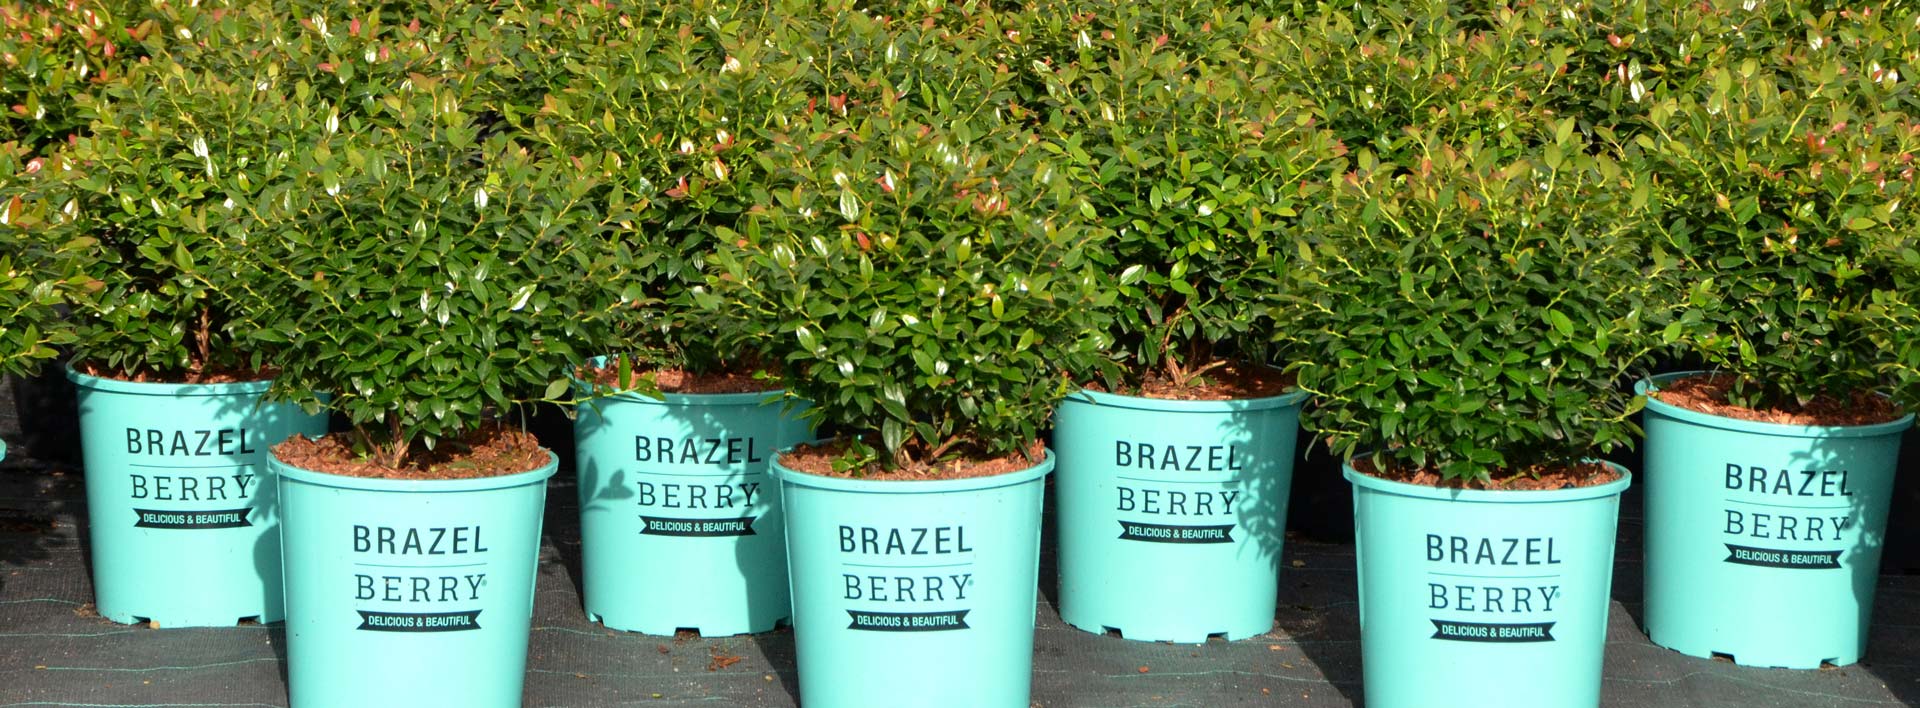 BrazelBerry® Pflanzen im Topf auf der Produktionsfläche in Deutschland